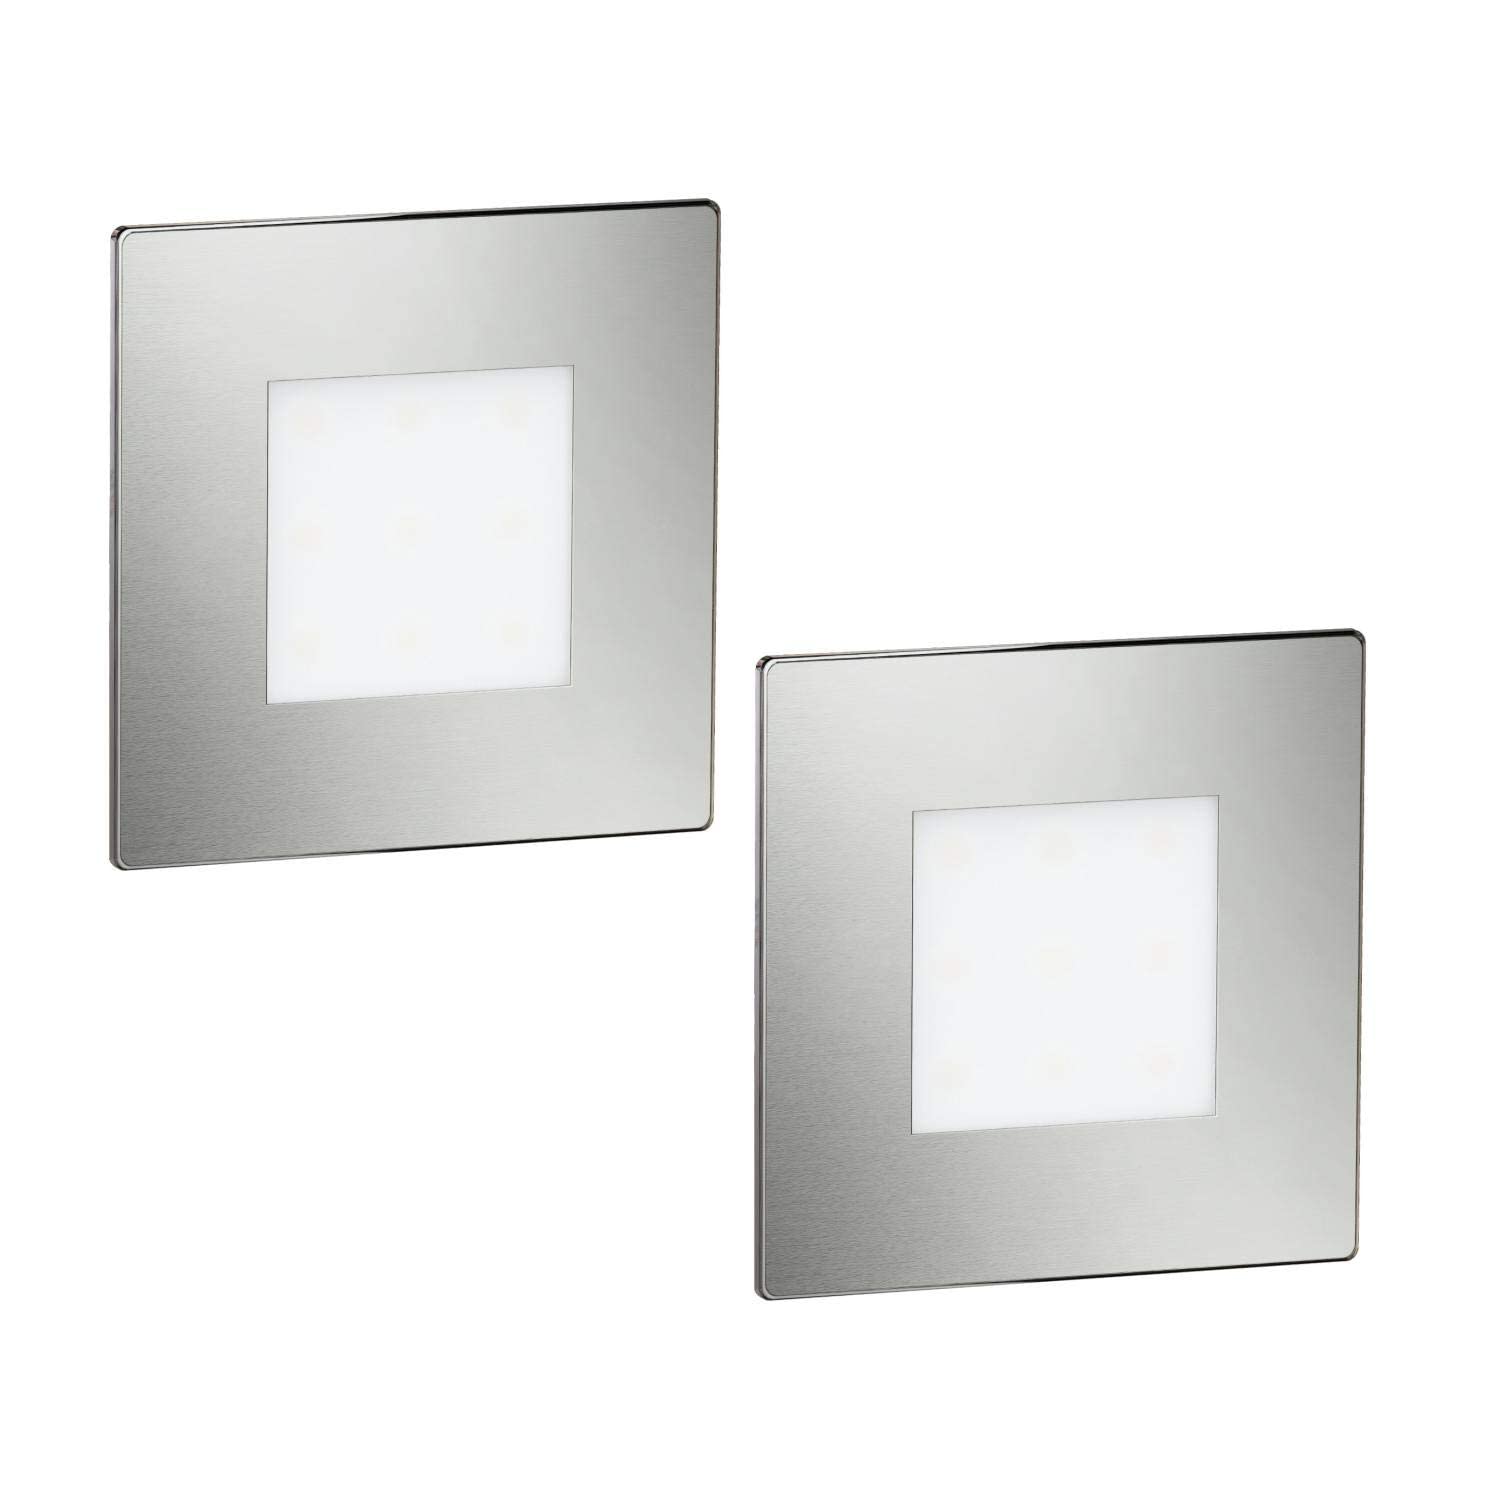 ledscom.de 2 Stück LED Treppenlicht/Wandeinbauleuchte FEX für innen und außen, eckig, edelstahl, 85 x 85mm, warmweiß